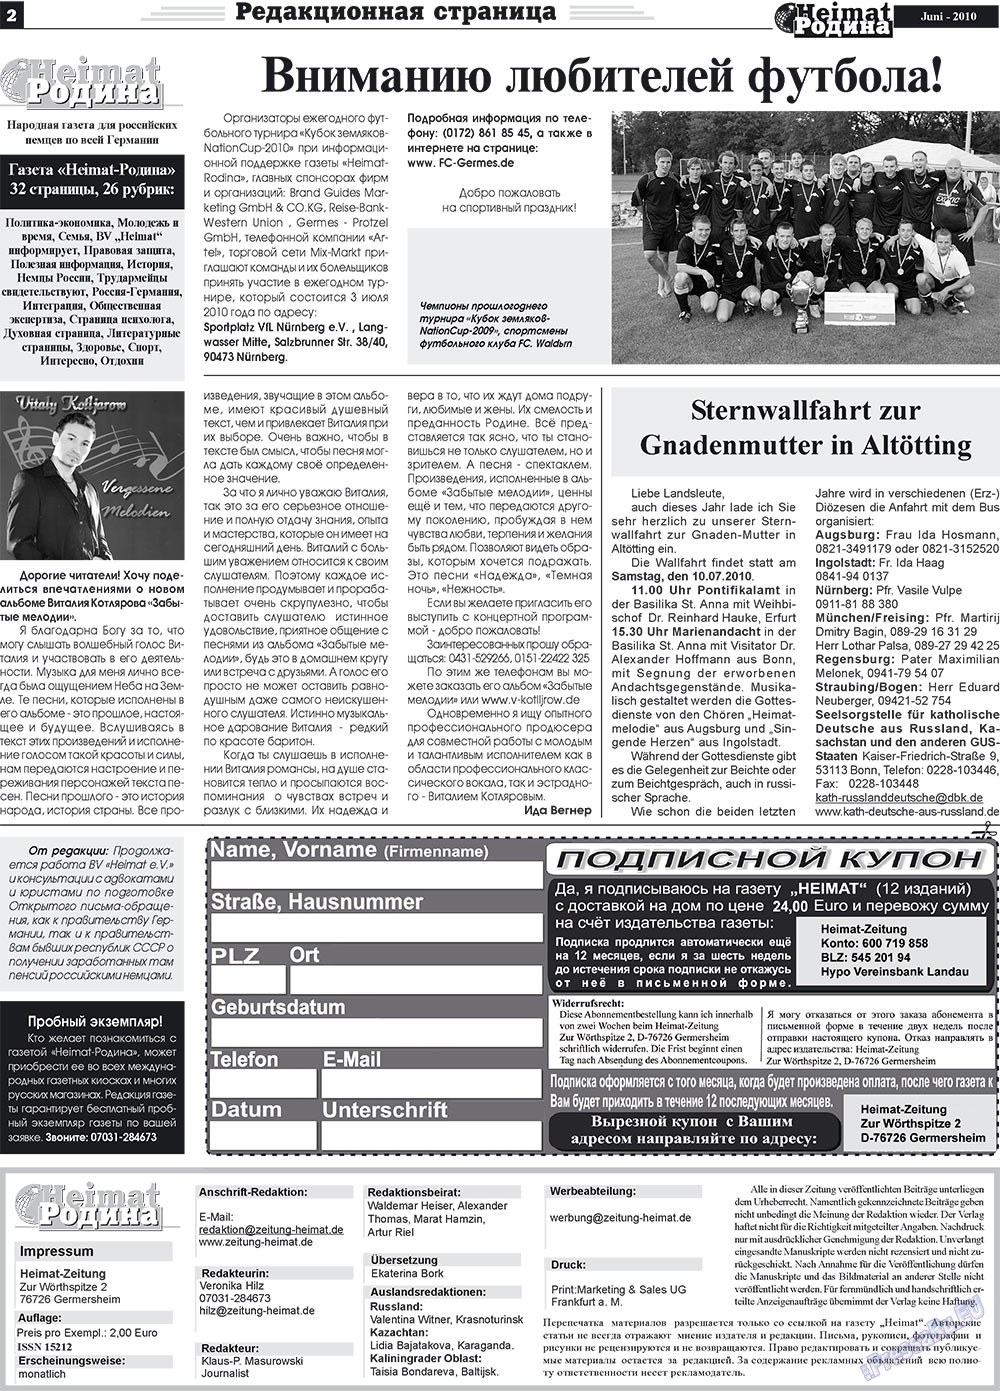 Heimat-Родина (газета). 2010 год, номер 6, стр. 2